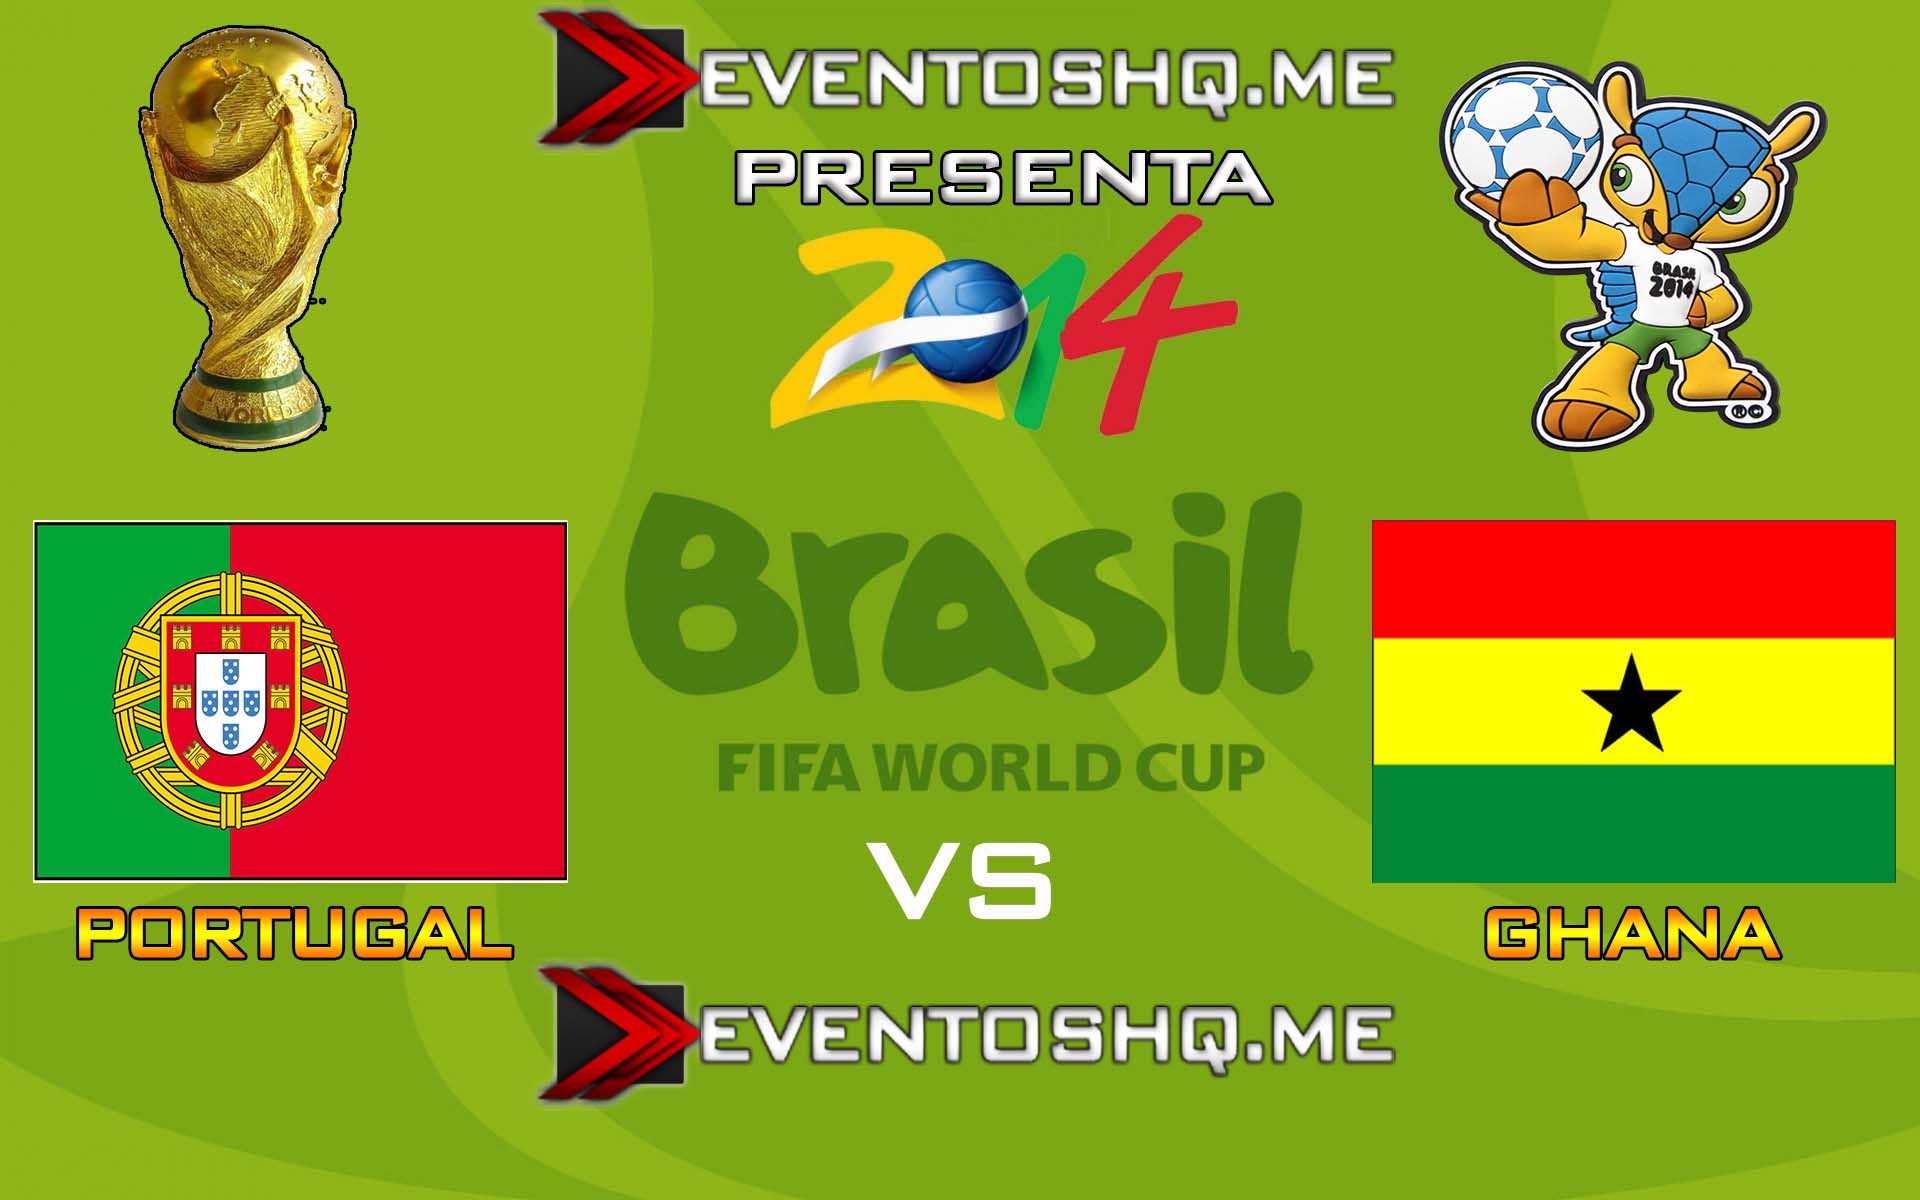 Ver en Vivo Portugal vs Ghana Mundial Brasil 2014 www.eventoshq.me